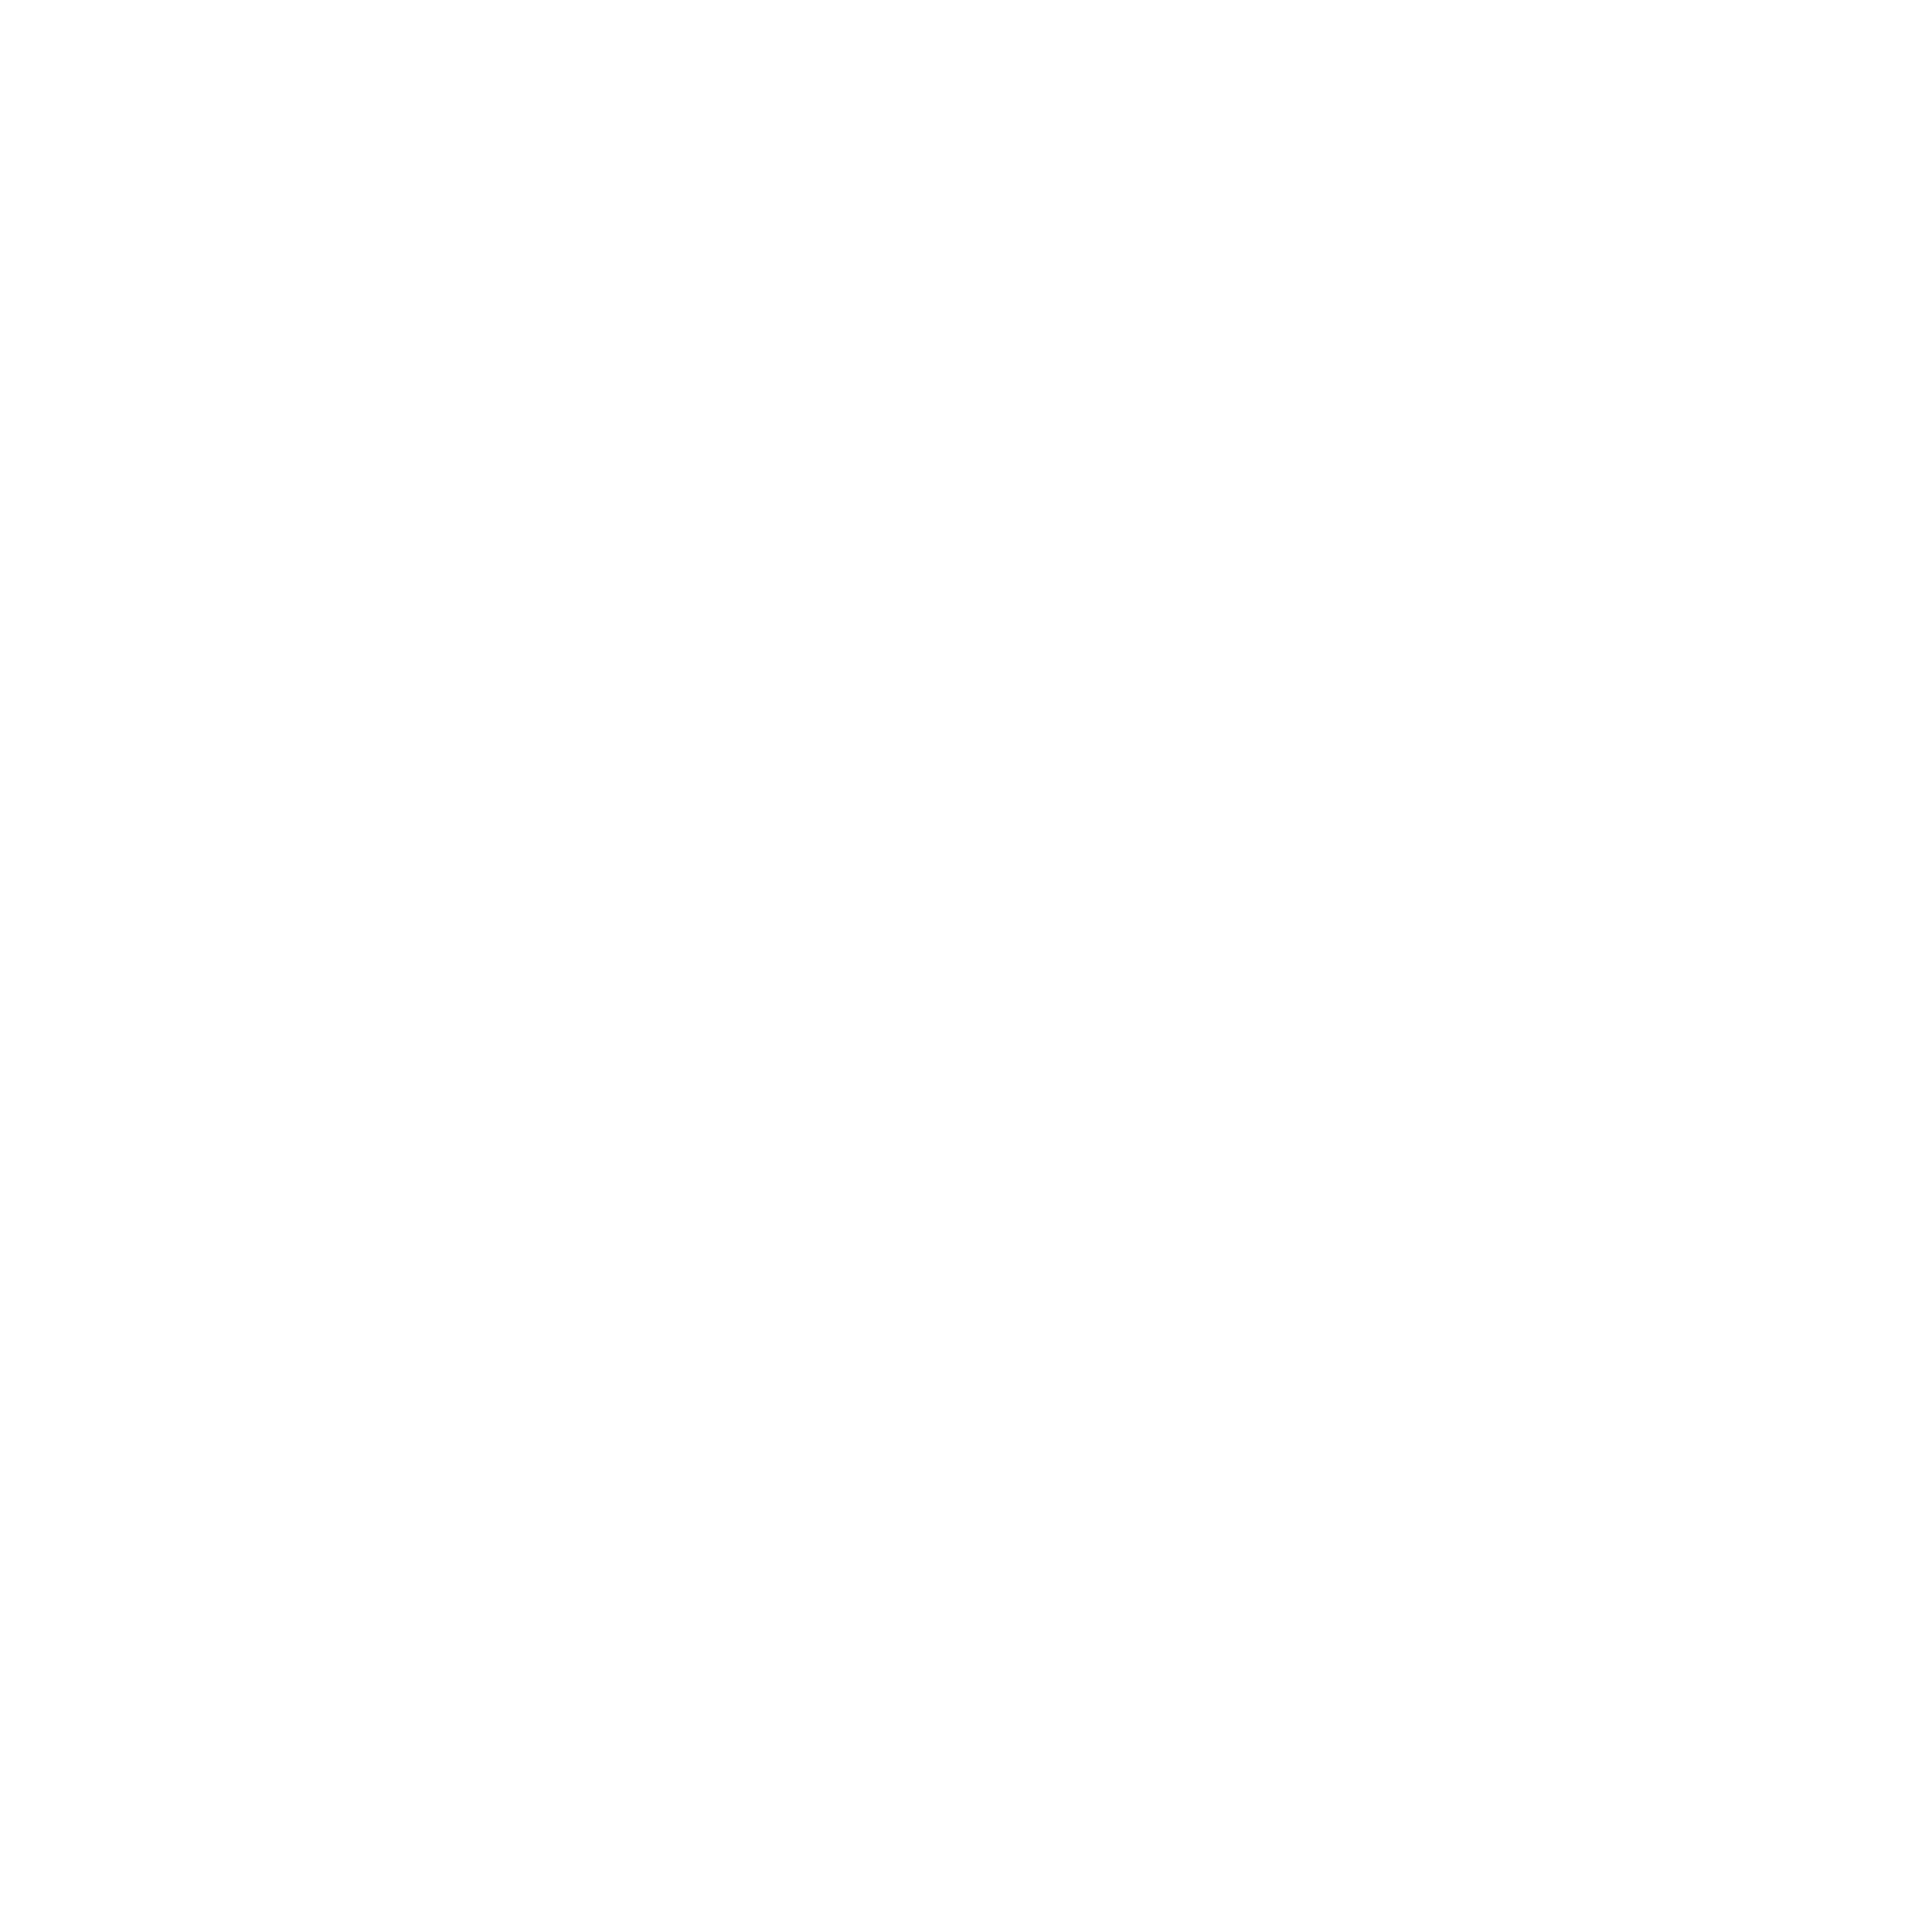 Visit the PLS website